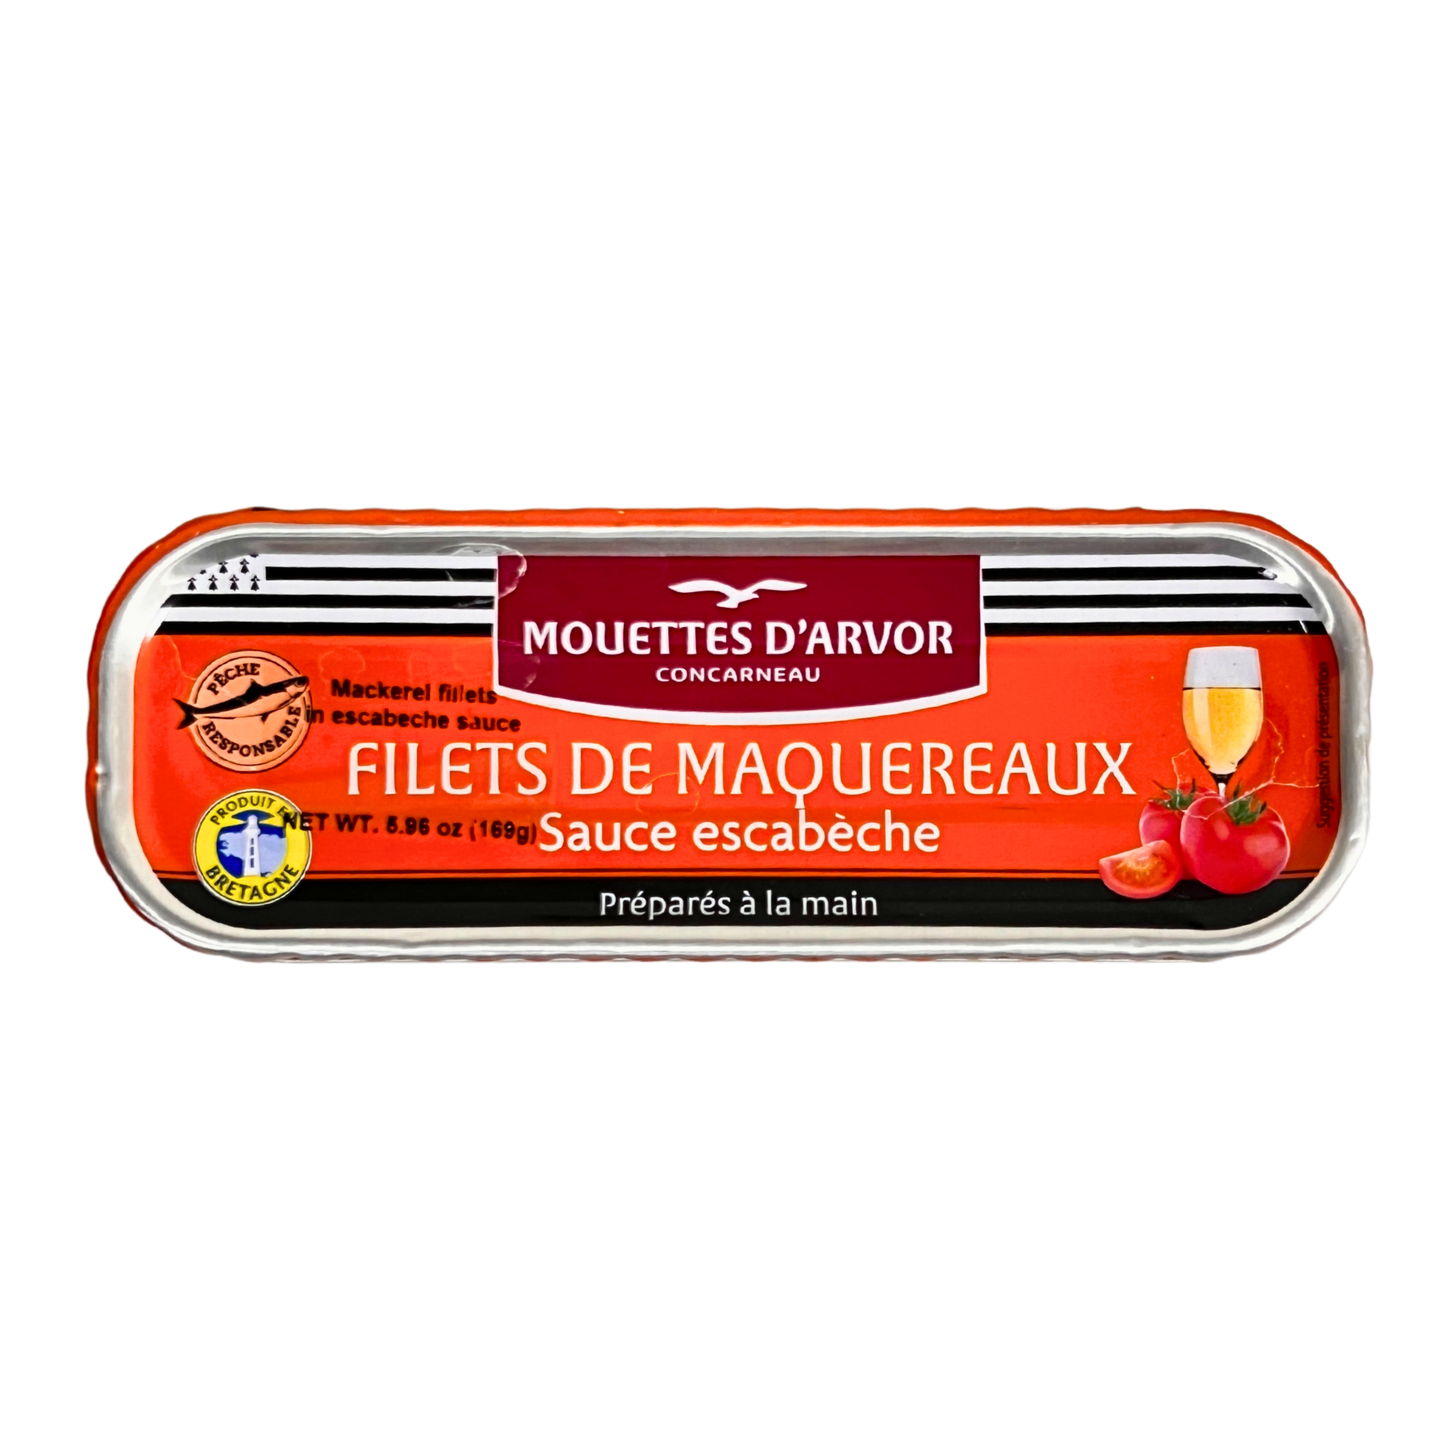 Mouettes d'Arvor Mackerel Filets in Escabeche Sauce 6.0 oz (169g)